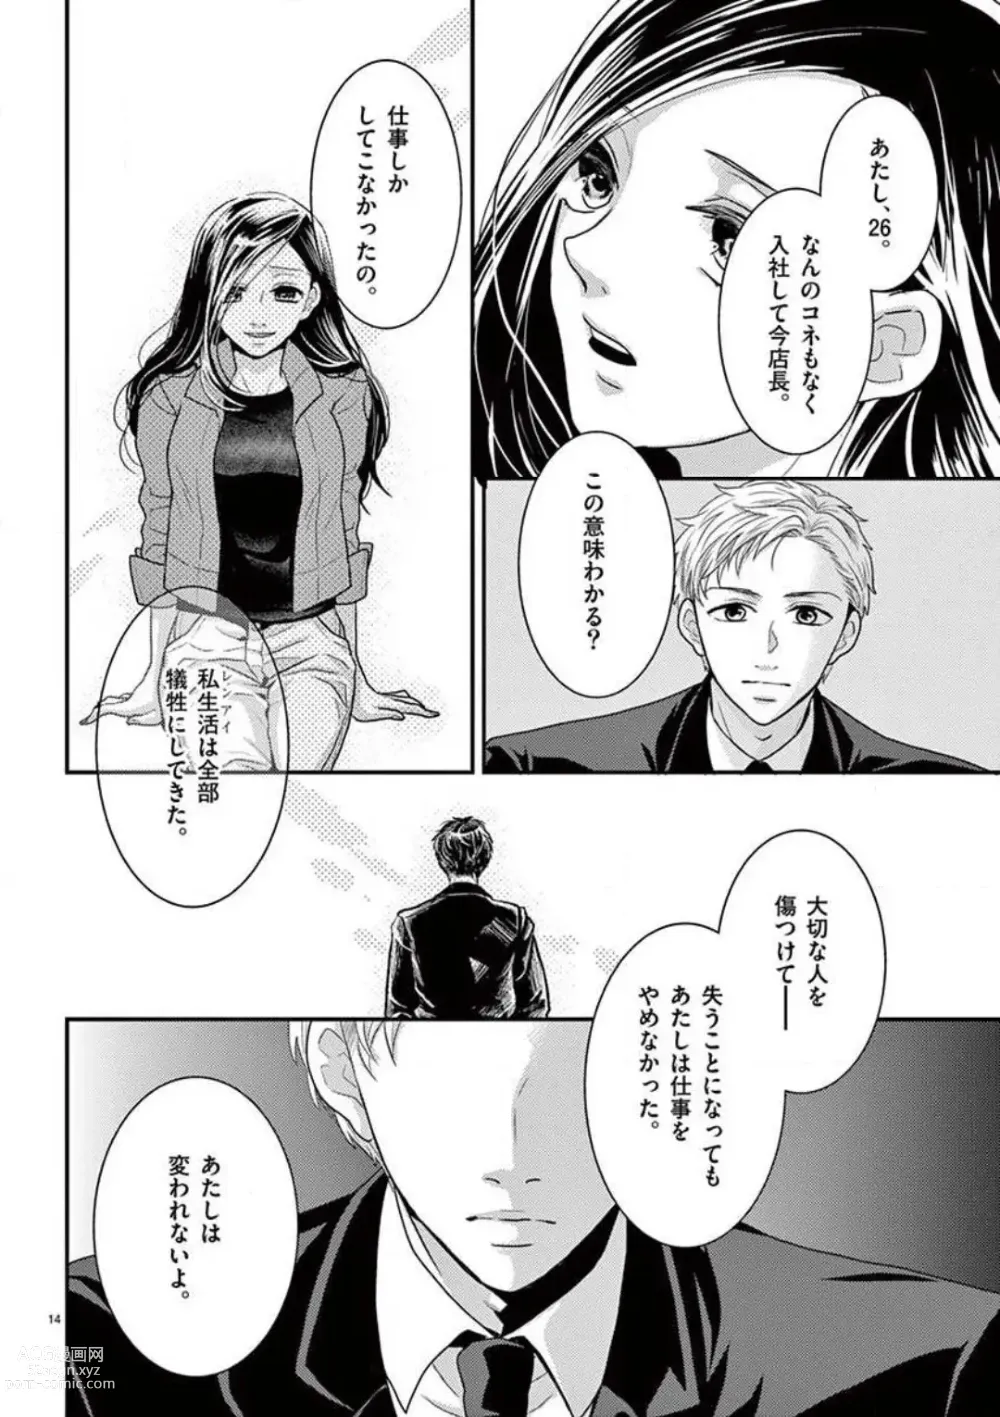 Page 14 of manga Yajū Suitchi ON!〜 Junjō Wanko wa Hageshi Sugi 〜